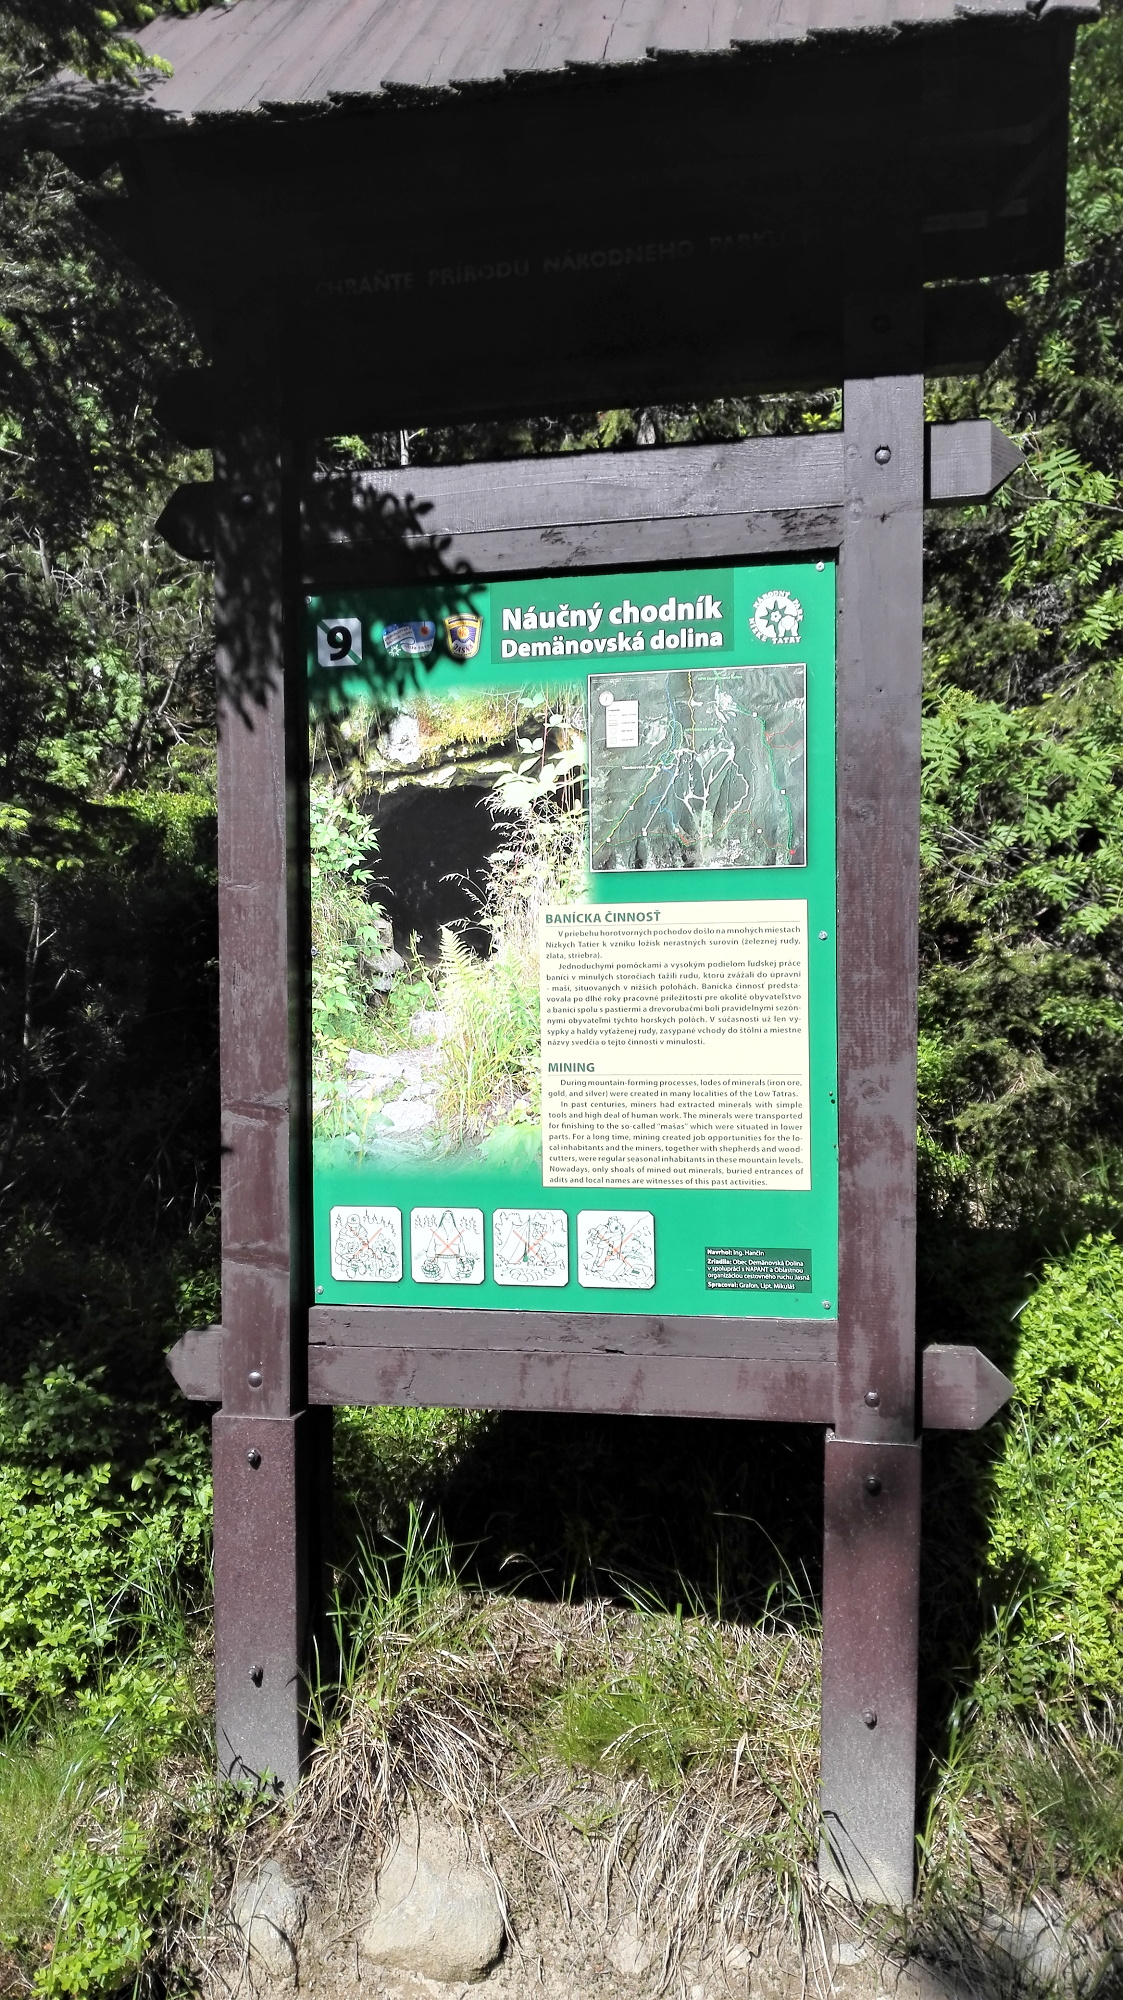 “Demänovská dolina” Nature Trail (Demänovská Valley)